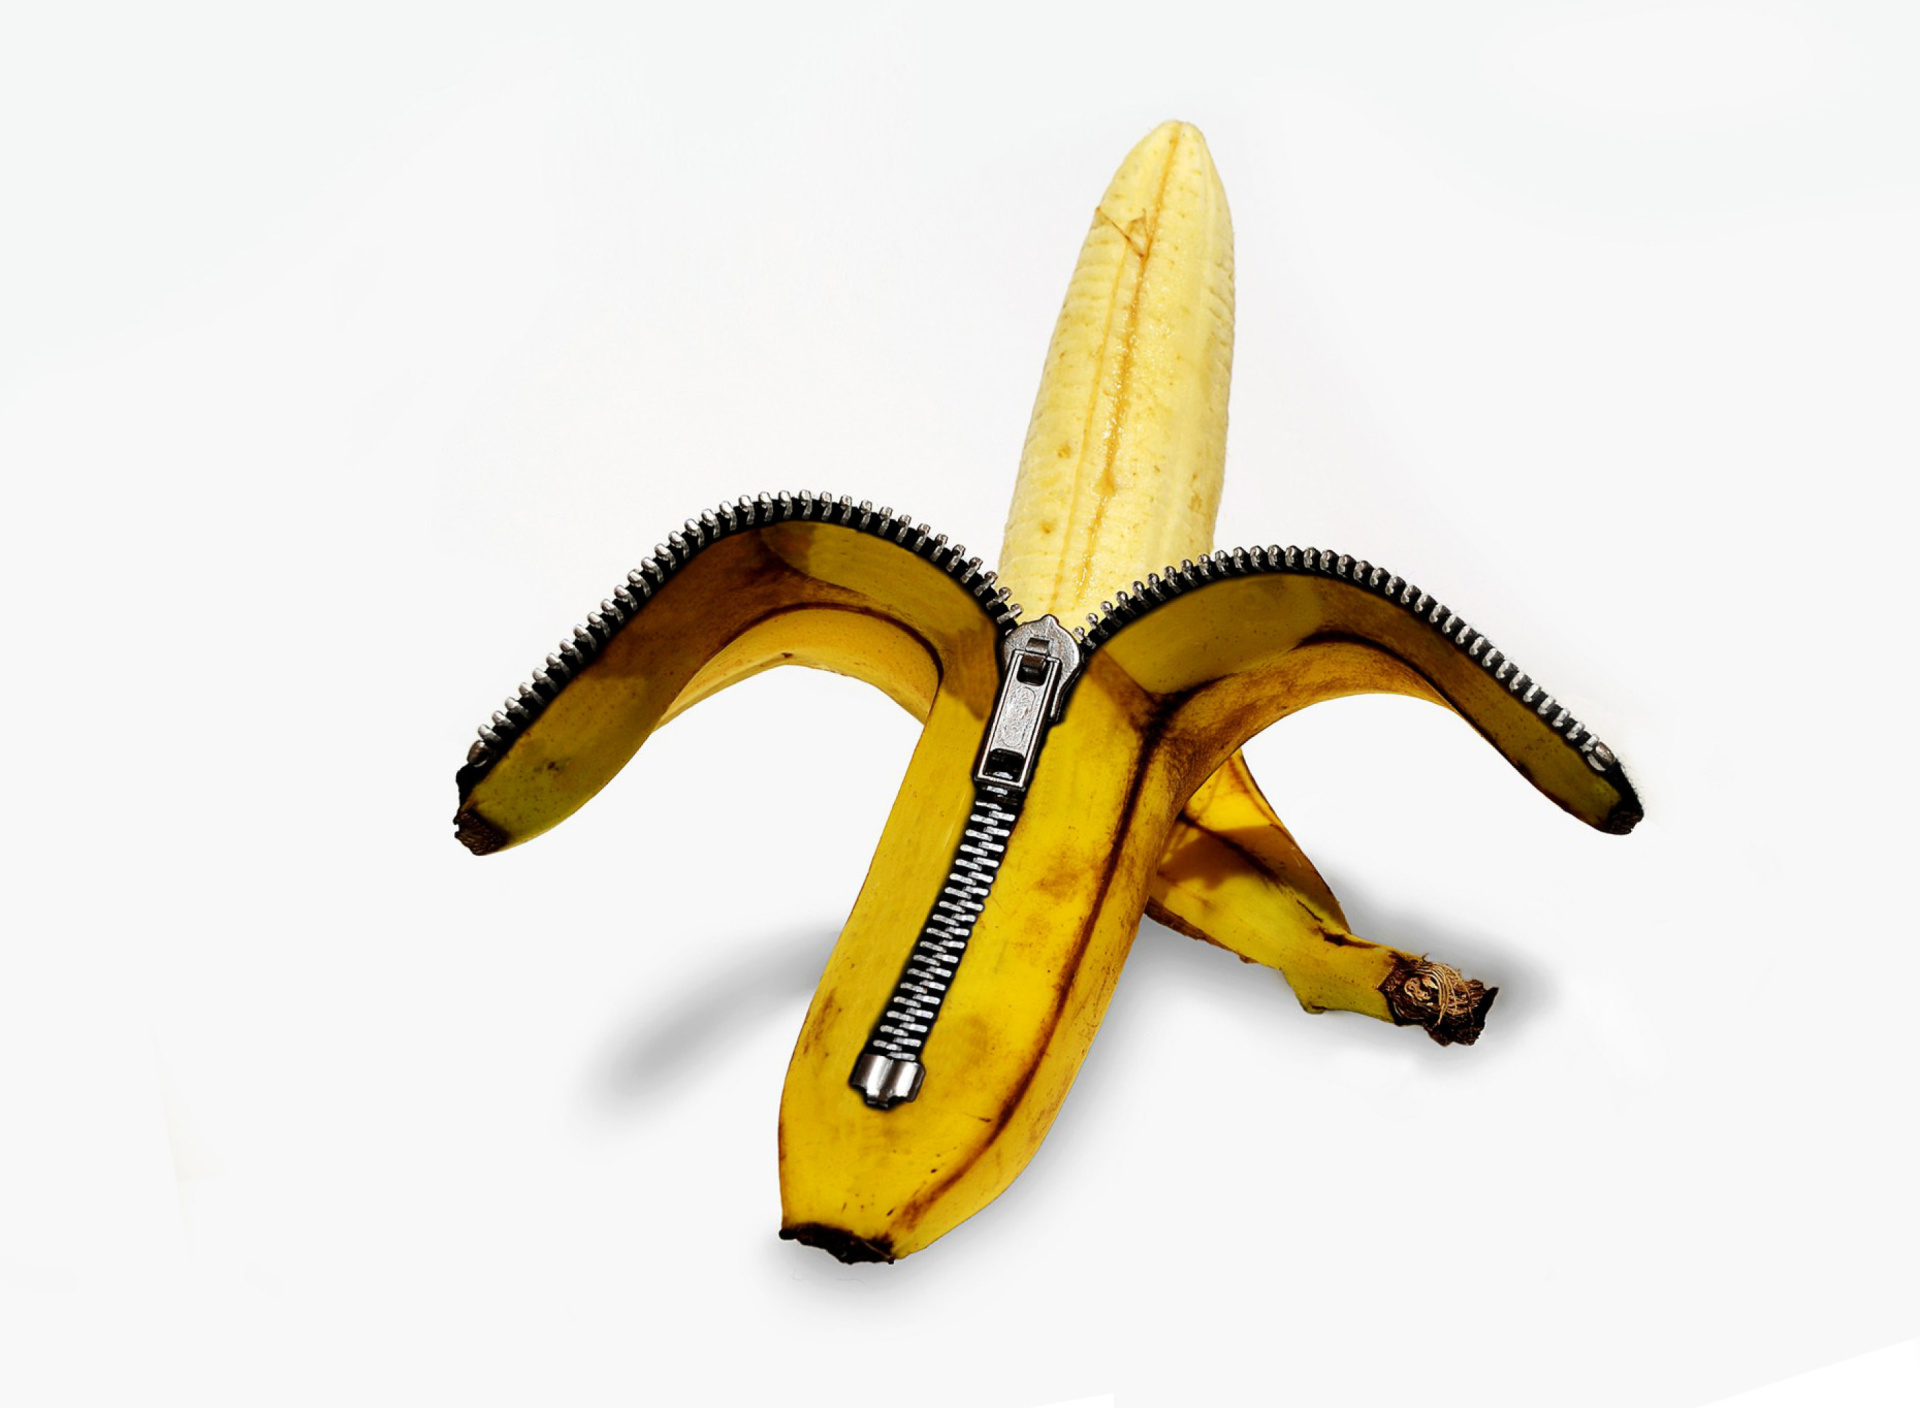 Funny banana as zipper screenshot #1 1920x1408